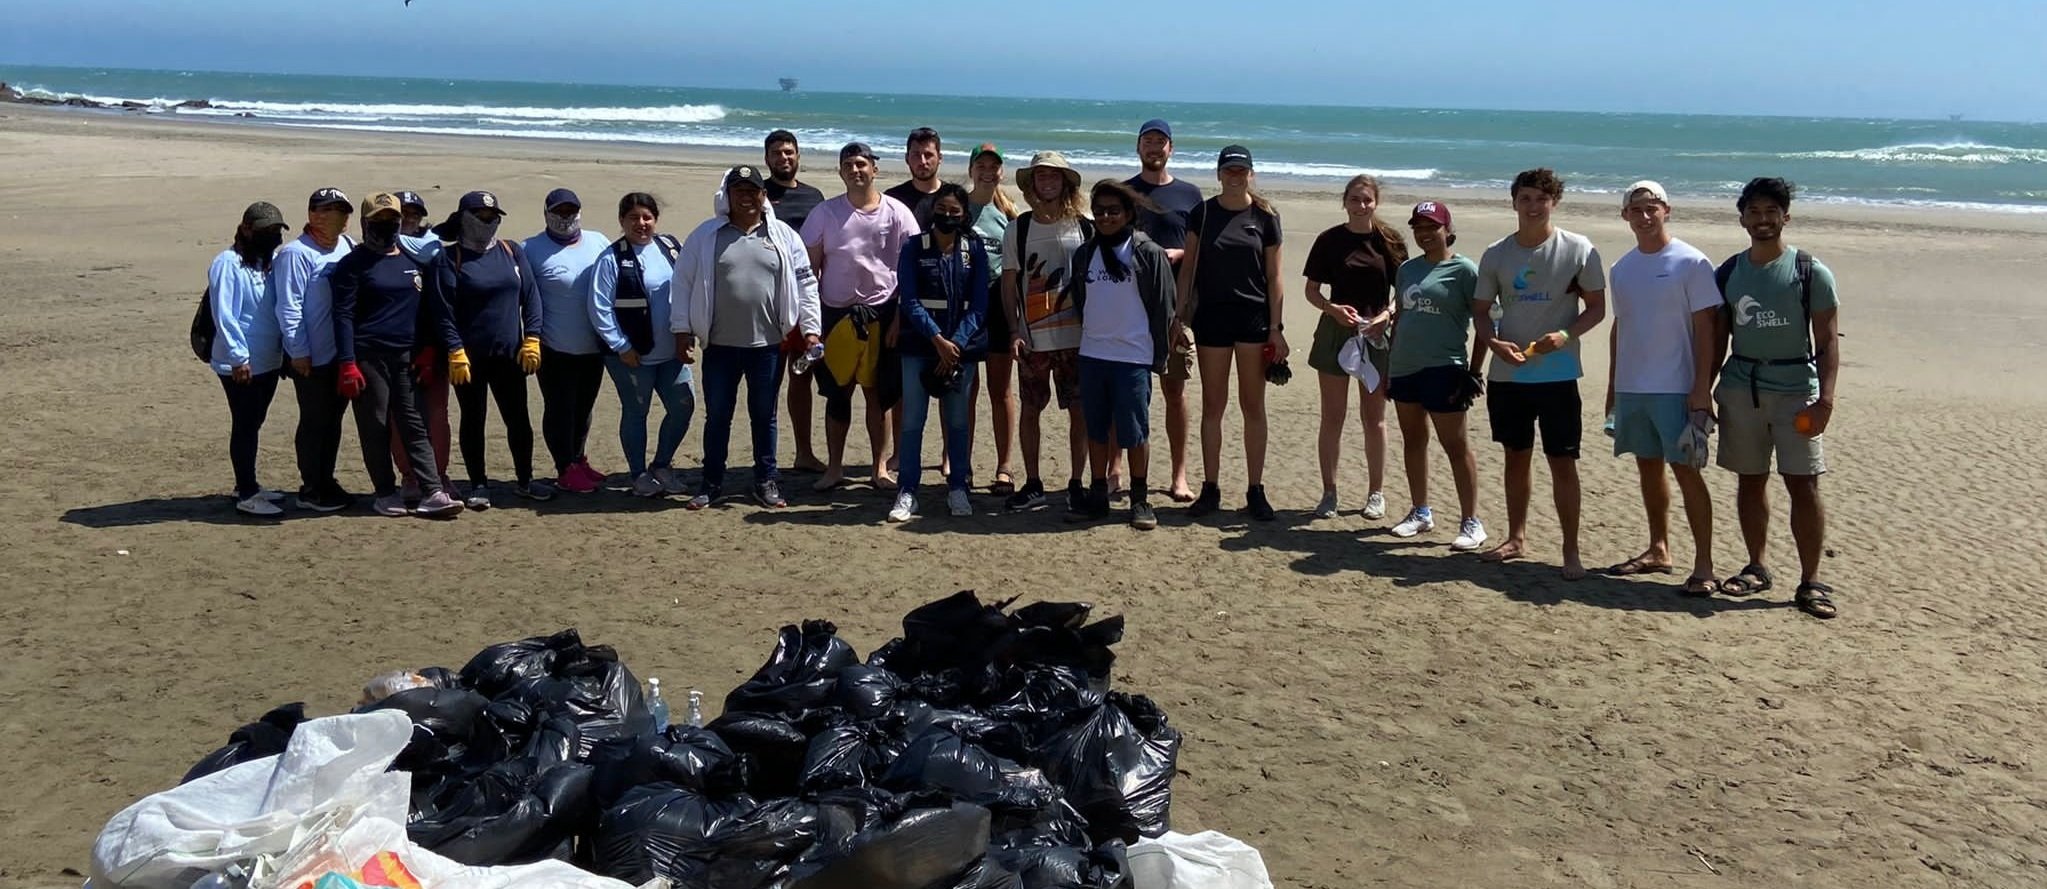 beach clean up waste management 